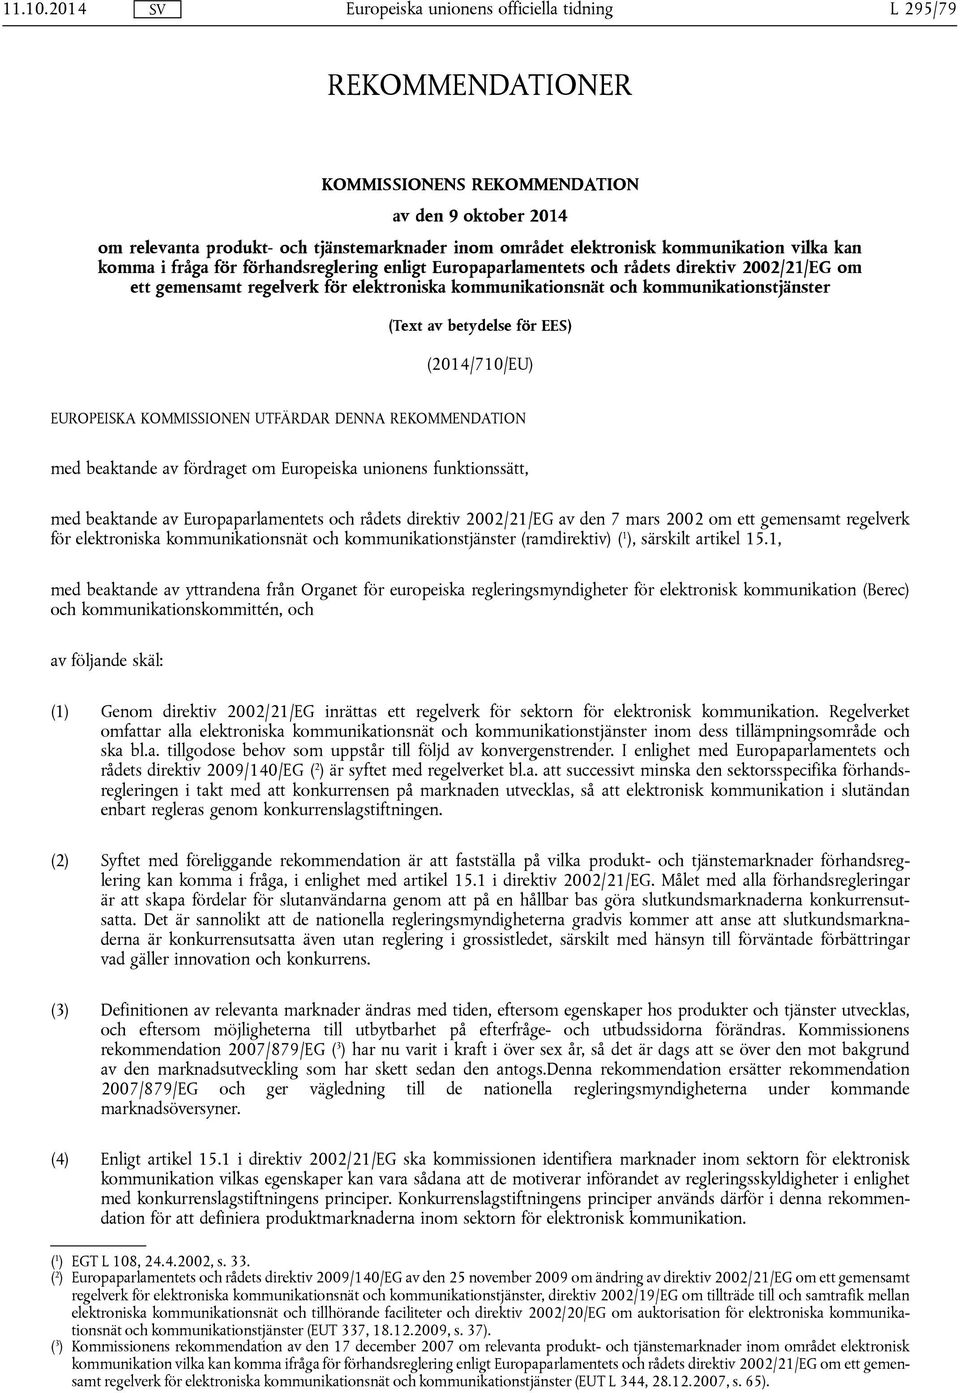 förhandsreglering enligt Europaparlamentets och rådets direktiv 2002/21/EG om ett gemensamt regelverk för elektroniska kommunikationsnät och kommunikationstjänster (Text av betydelse för EES)